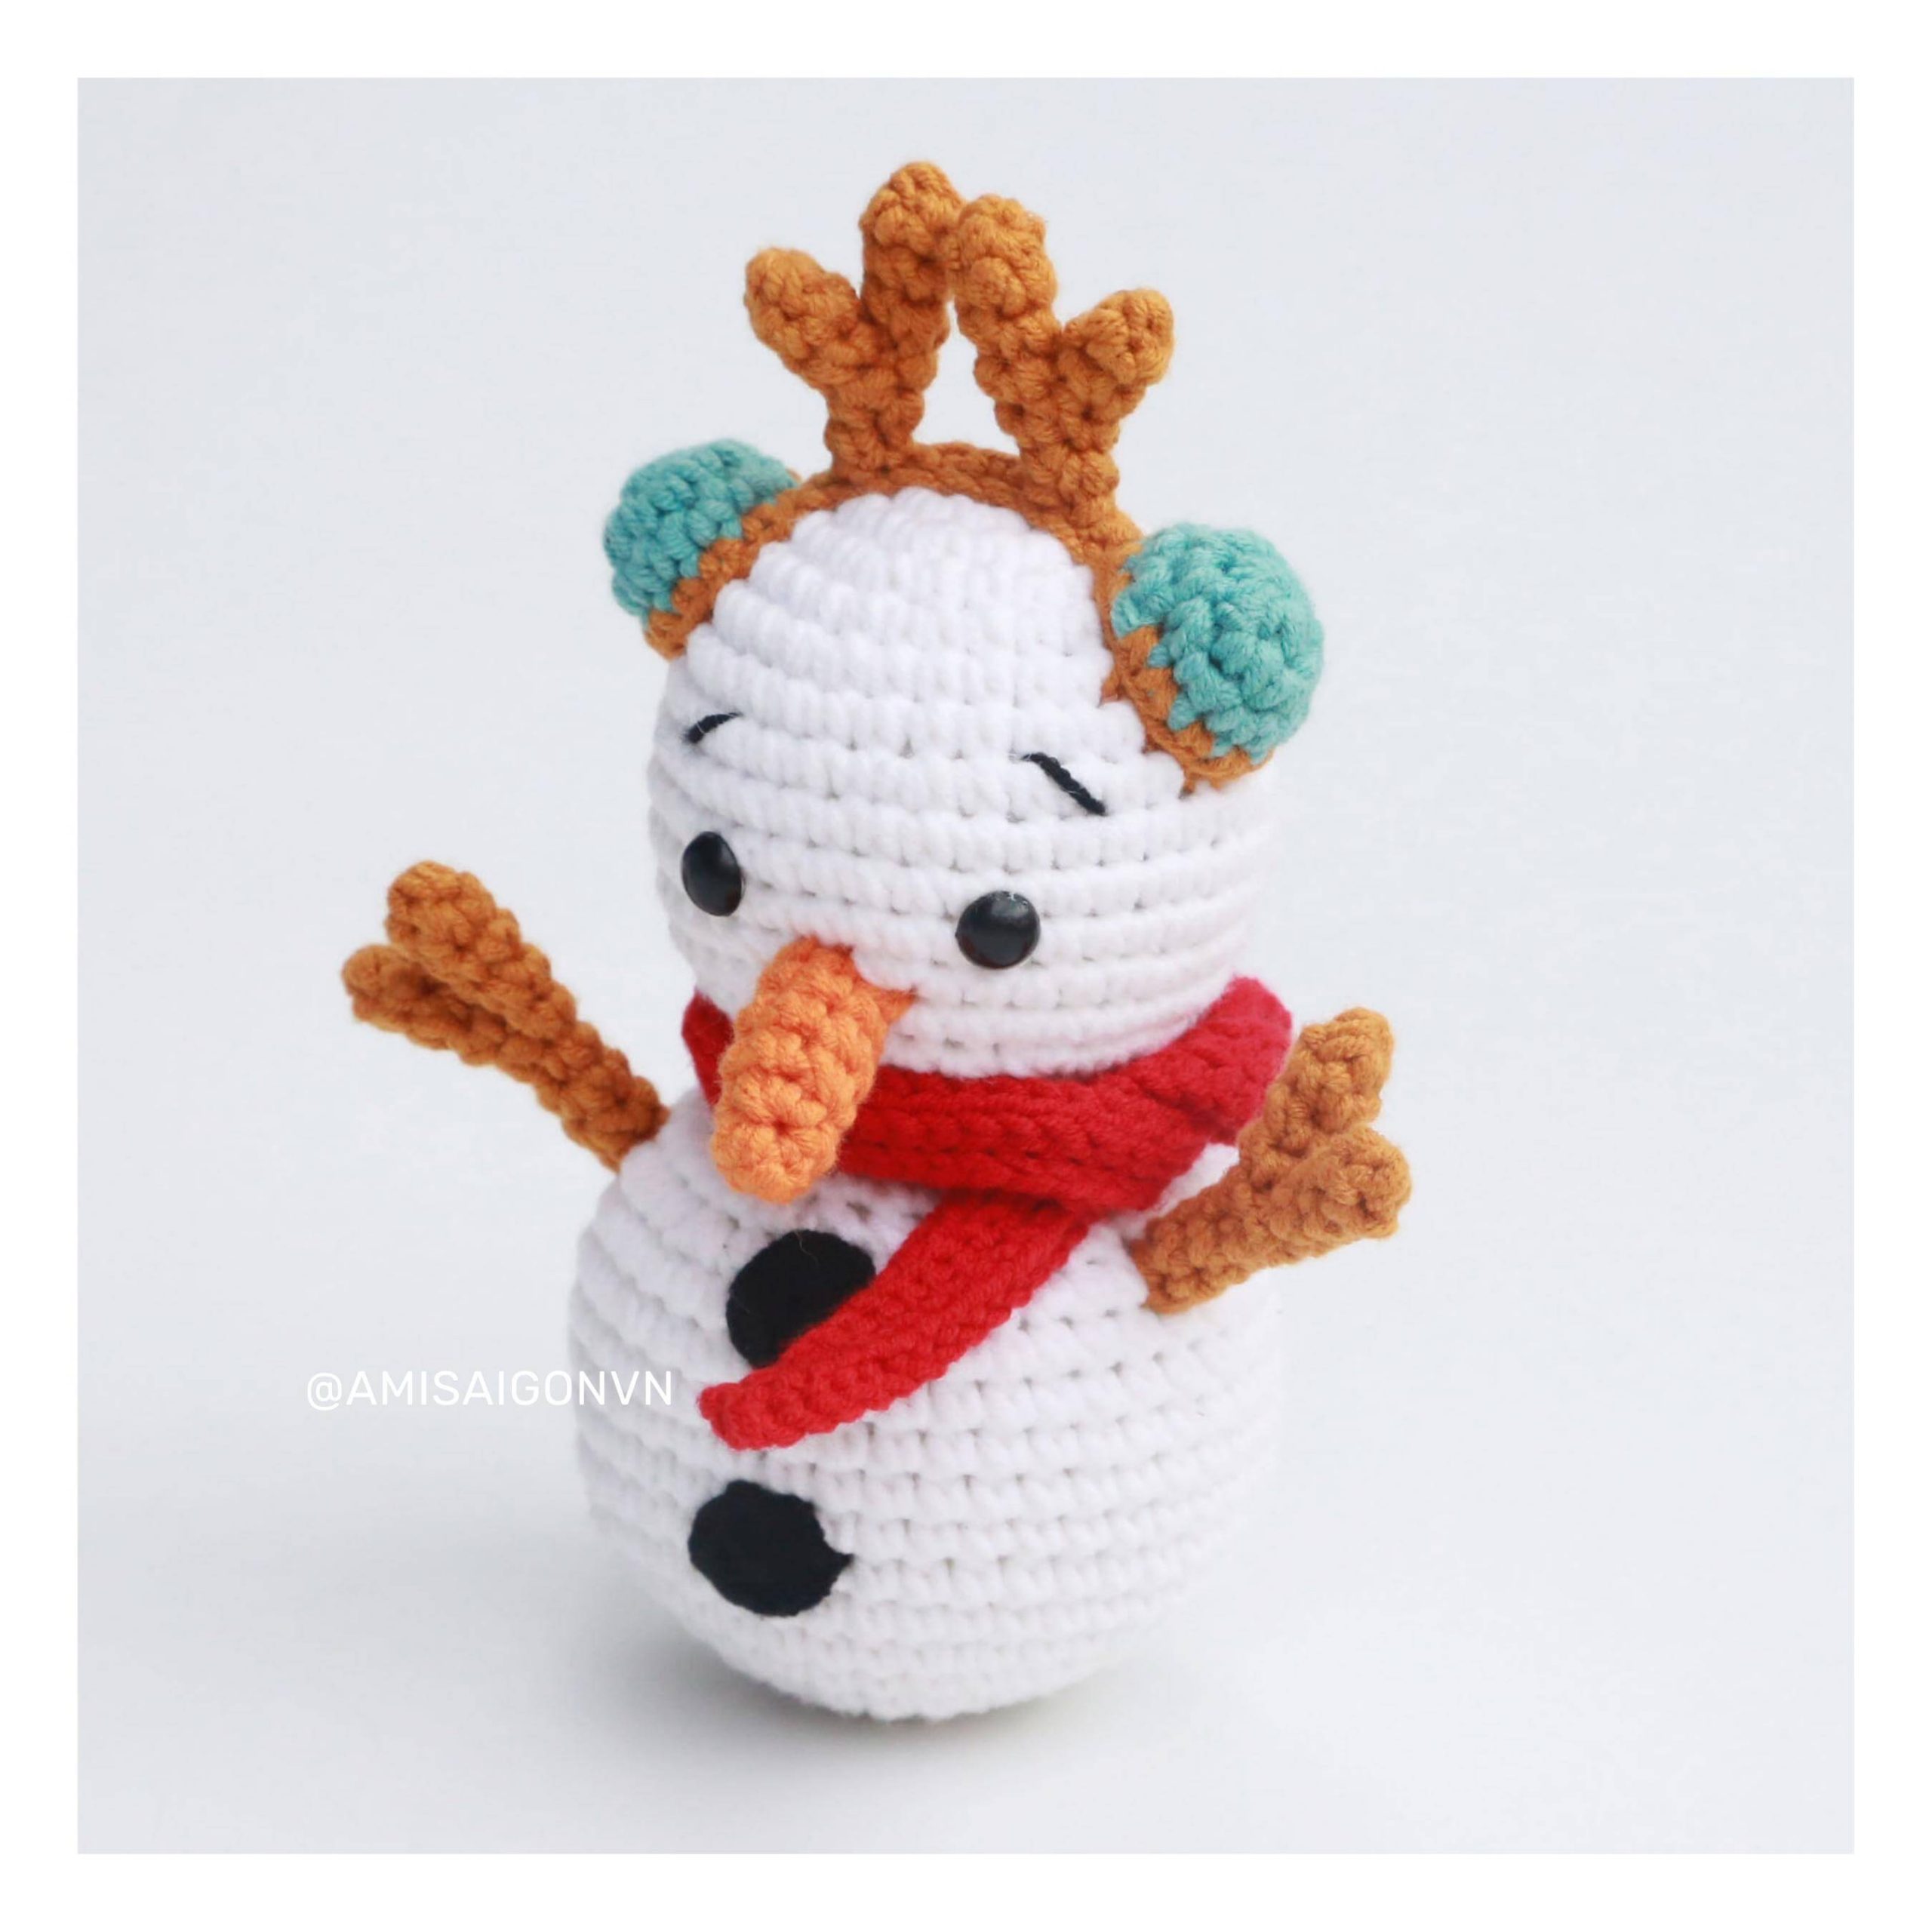 snowman-amigurumi-crochet-pattern-amisaigon (12)